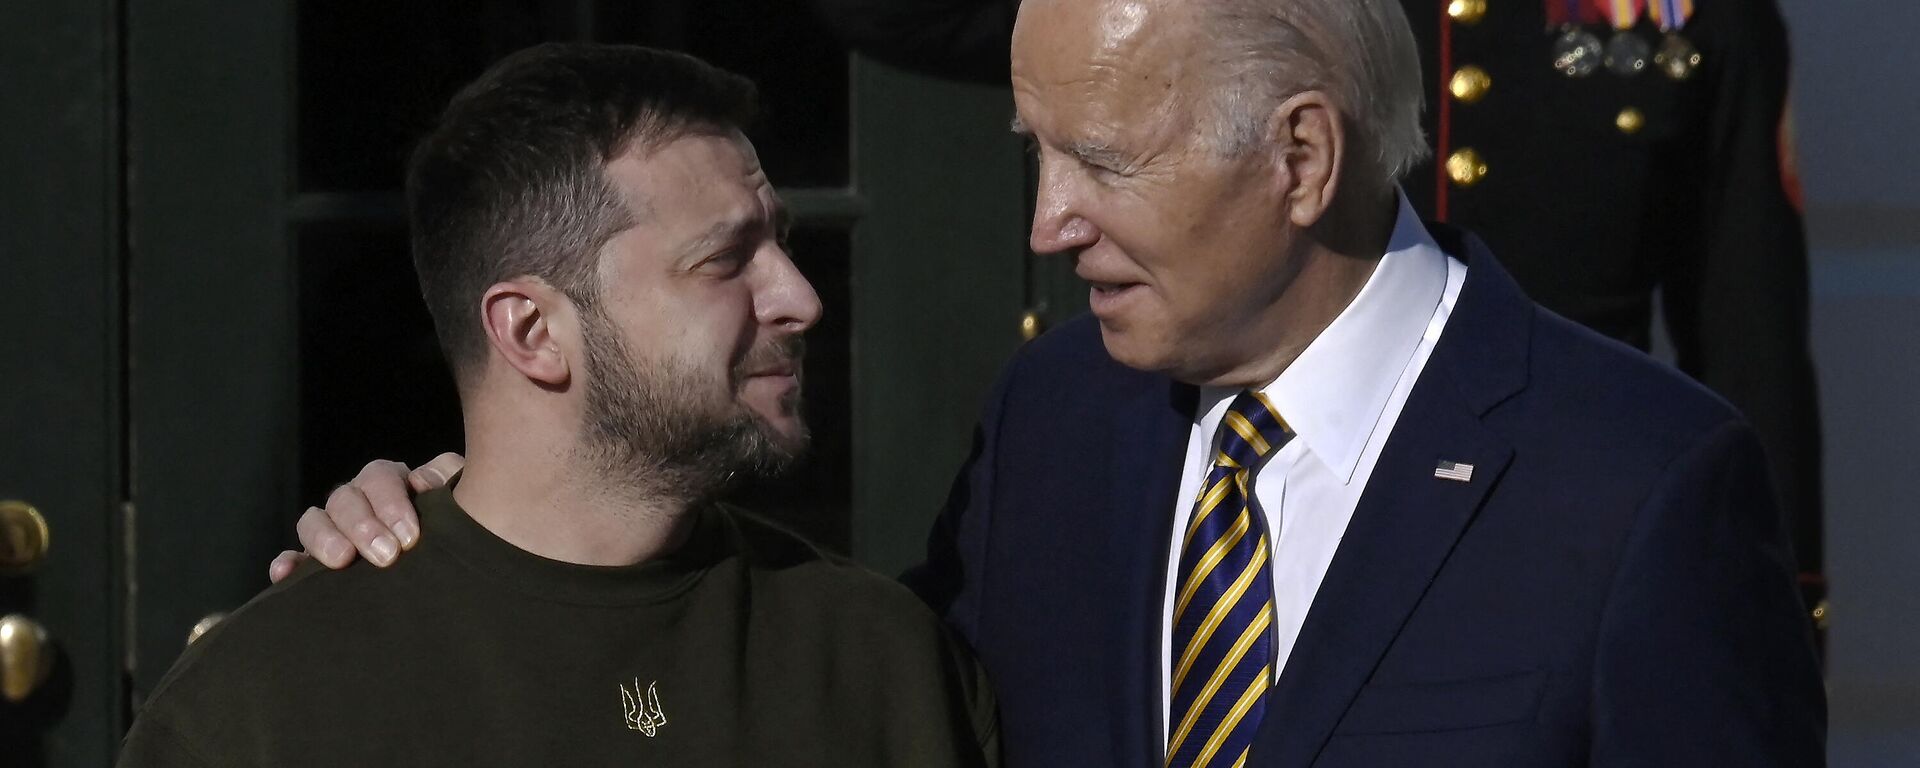 Tổng thống Hoa Kỳ Joe Biden chào đón Tổng thống Ukraina Vladimir Zelensky tại Bãi cỏ phía Nam Nhà Trắng ở Washington, ngày 21/12/2022 - Sputnik Việt Nam, 1920, 10.04.2023